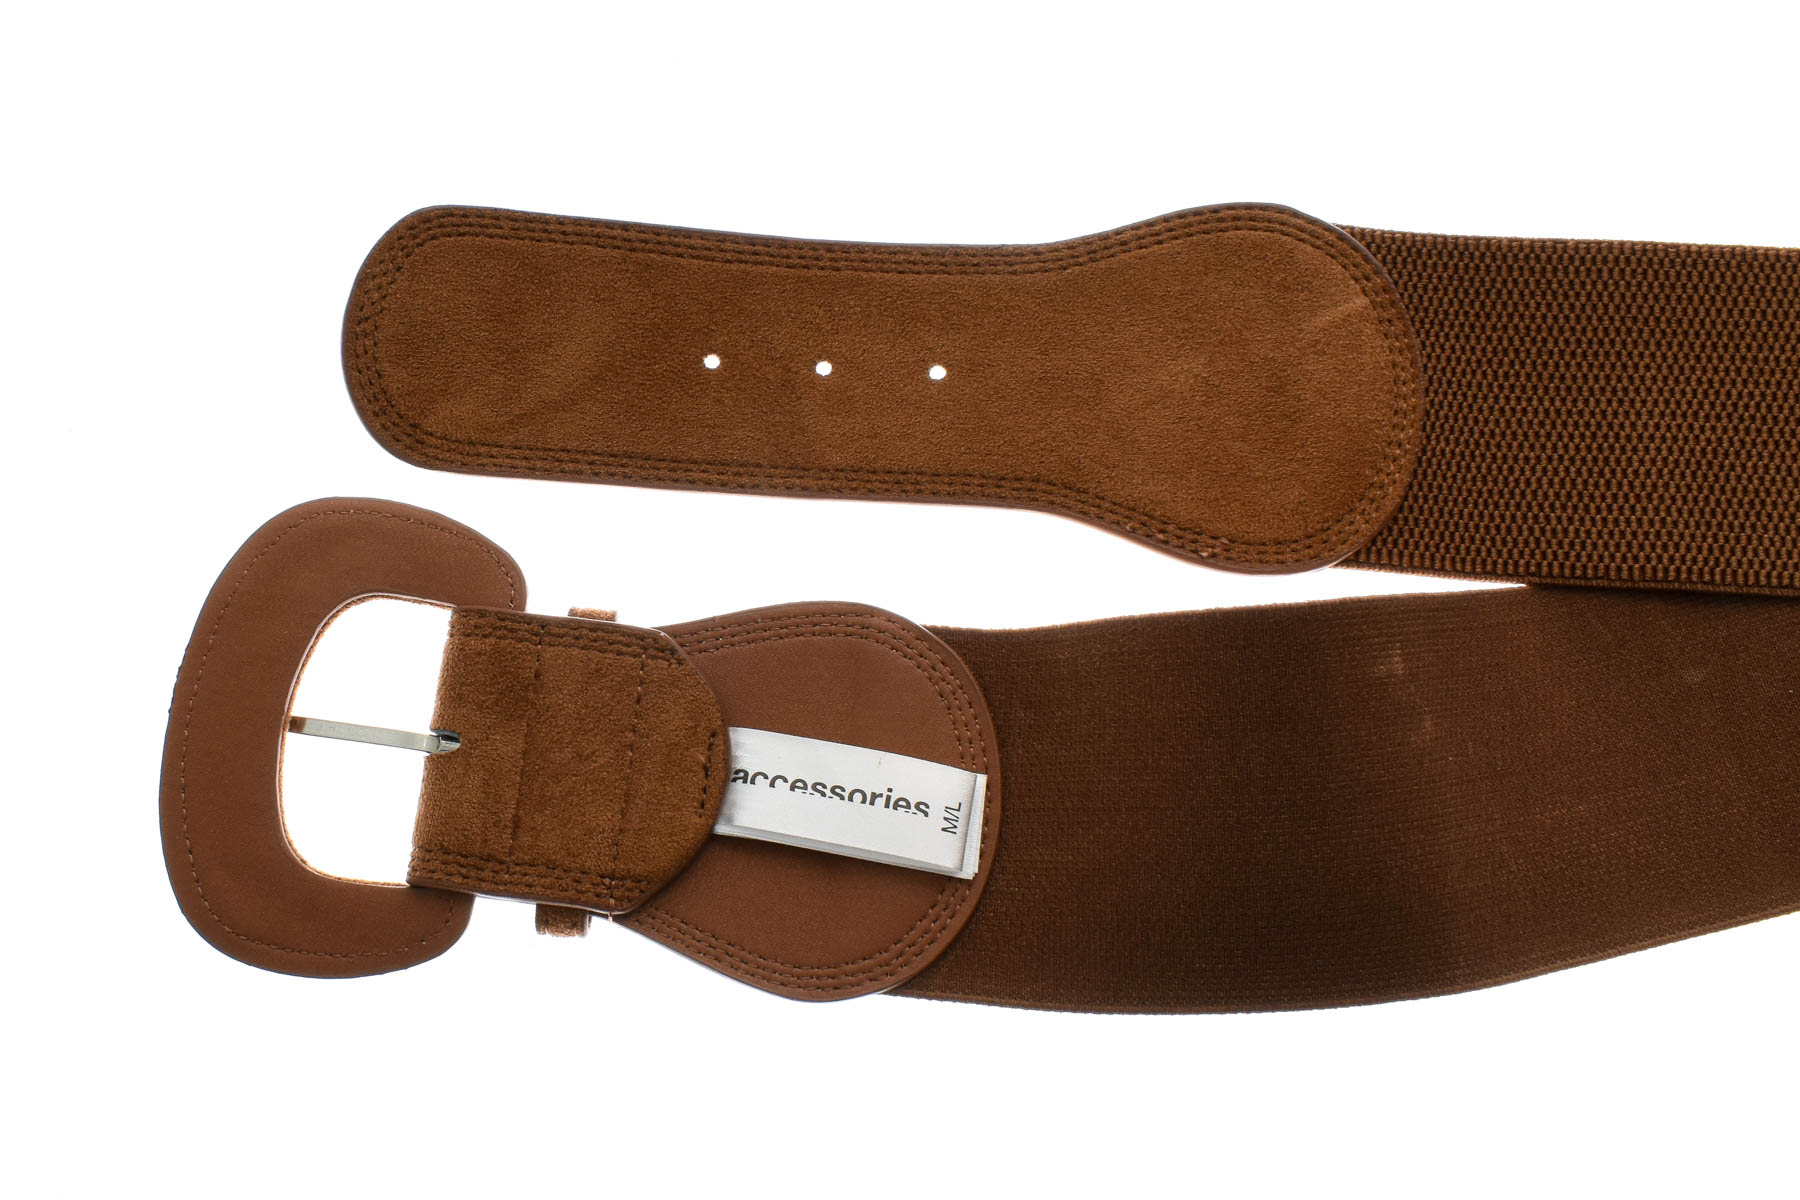 Ladies's belt - Accessoires - 2